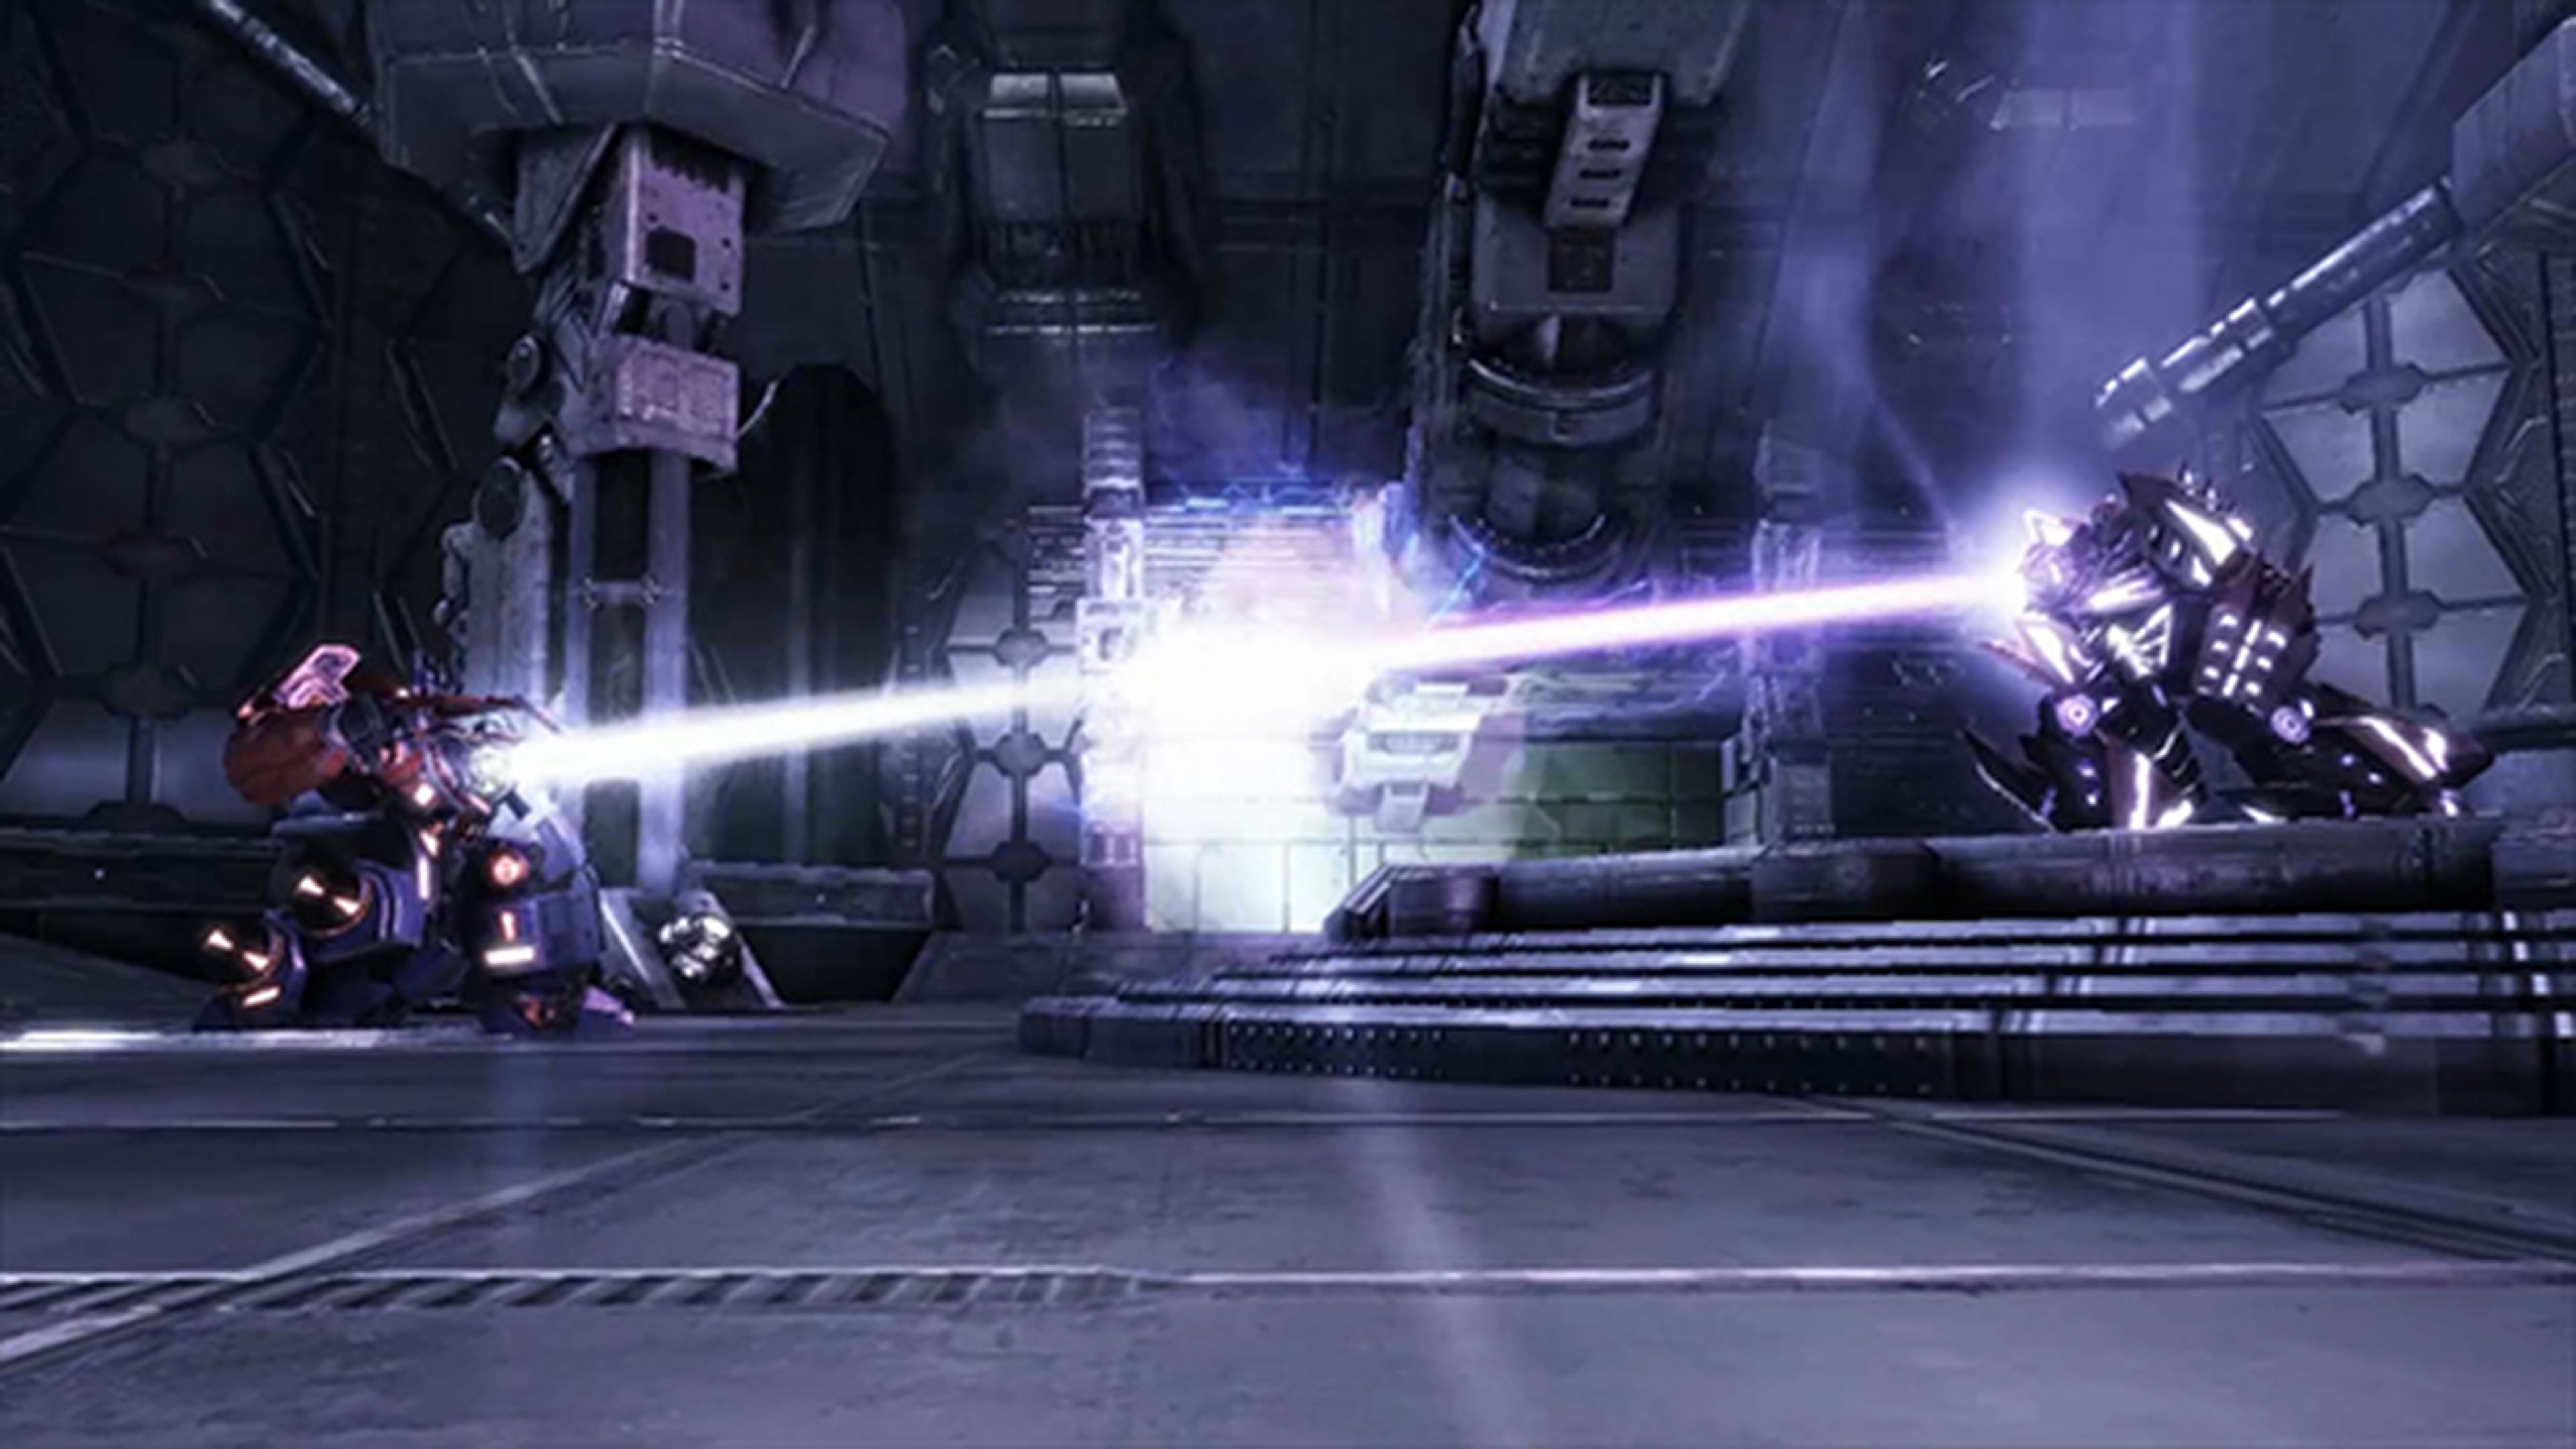 Análisis de Transformers: The Dark Spark para Wii U